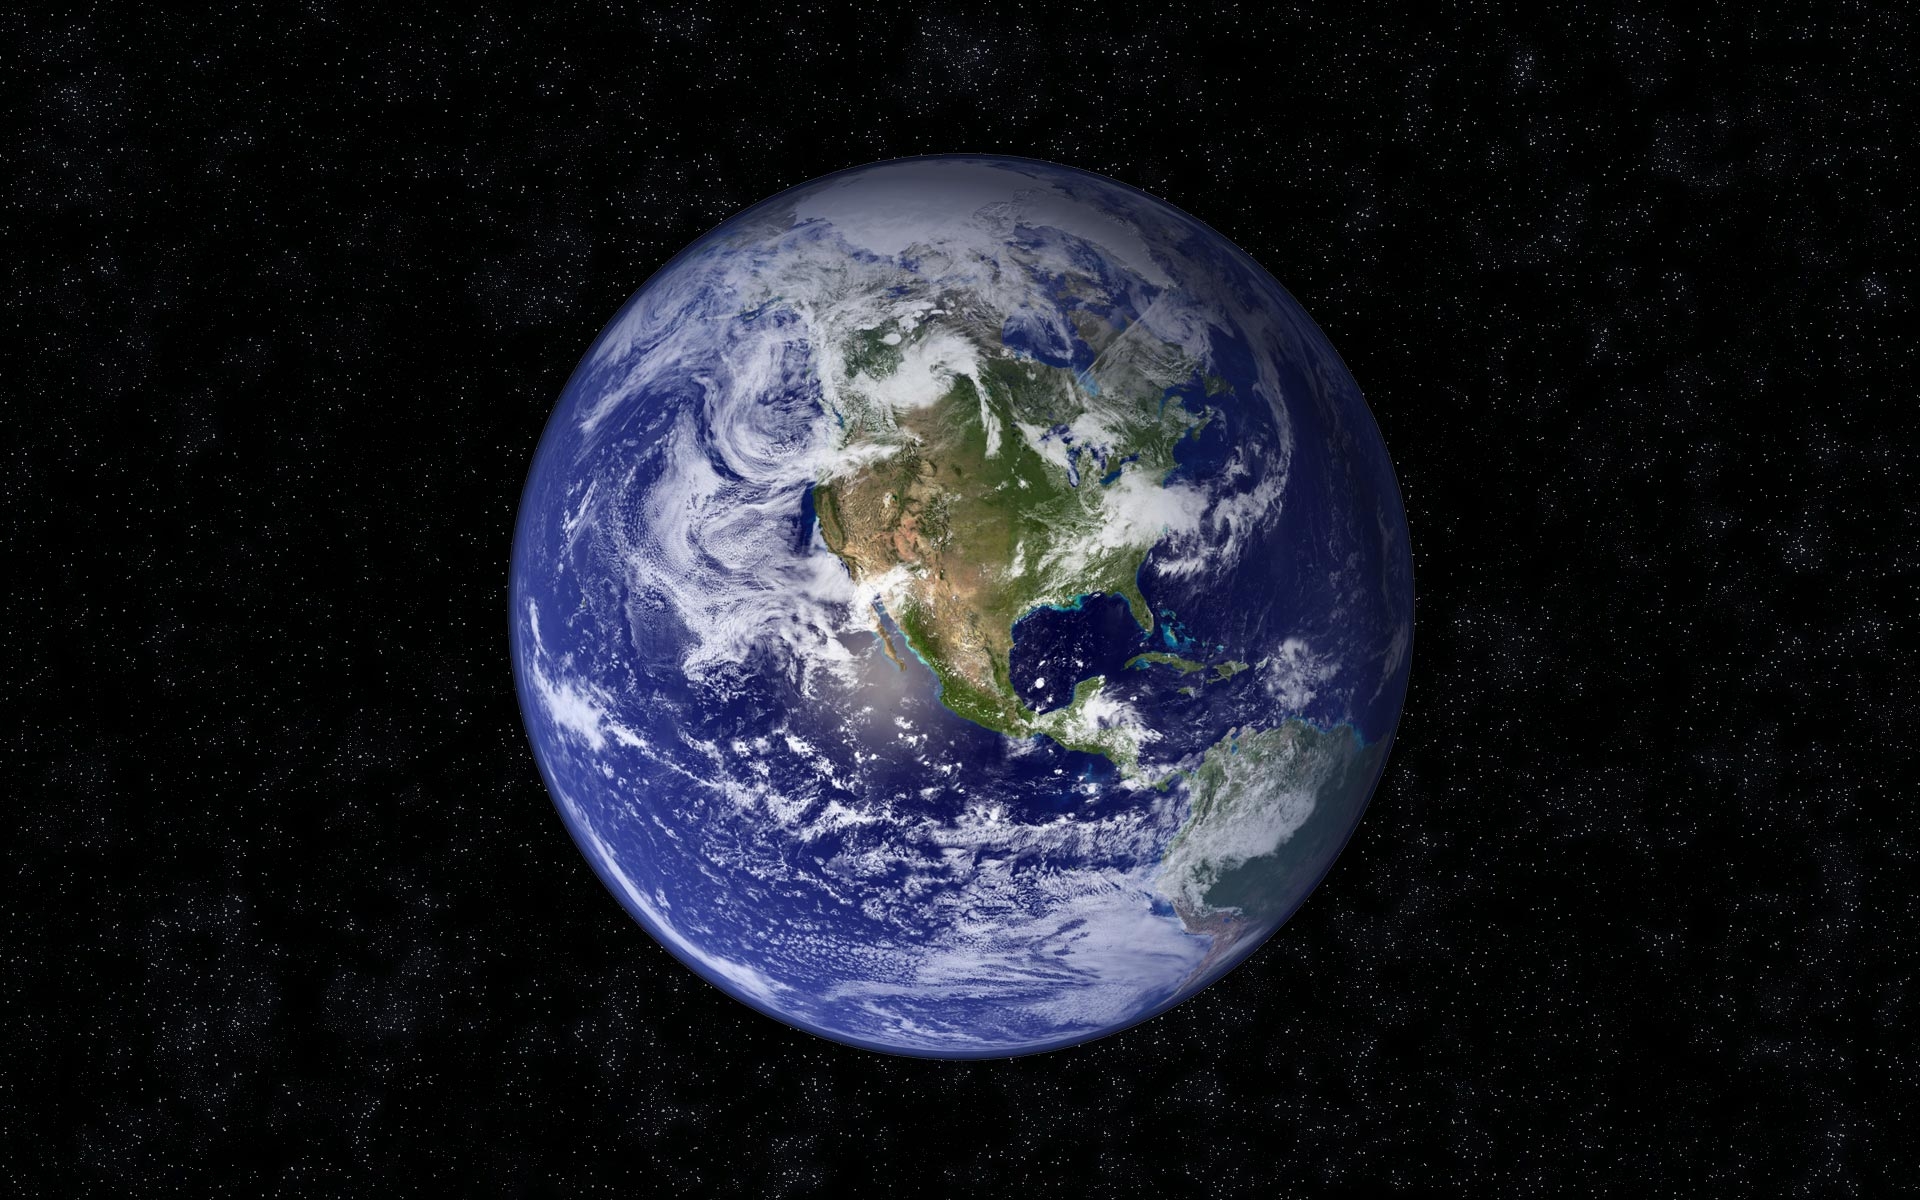 Картинки Земля, планета, синий, черный, звезды фото и обои на рабочий стол